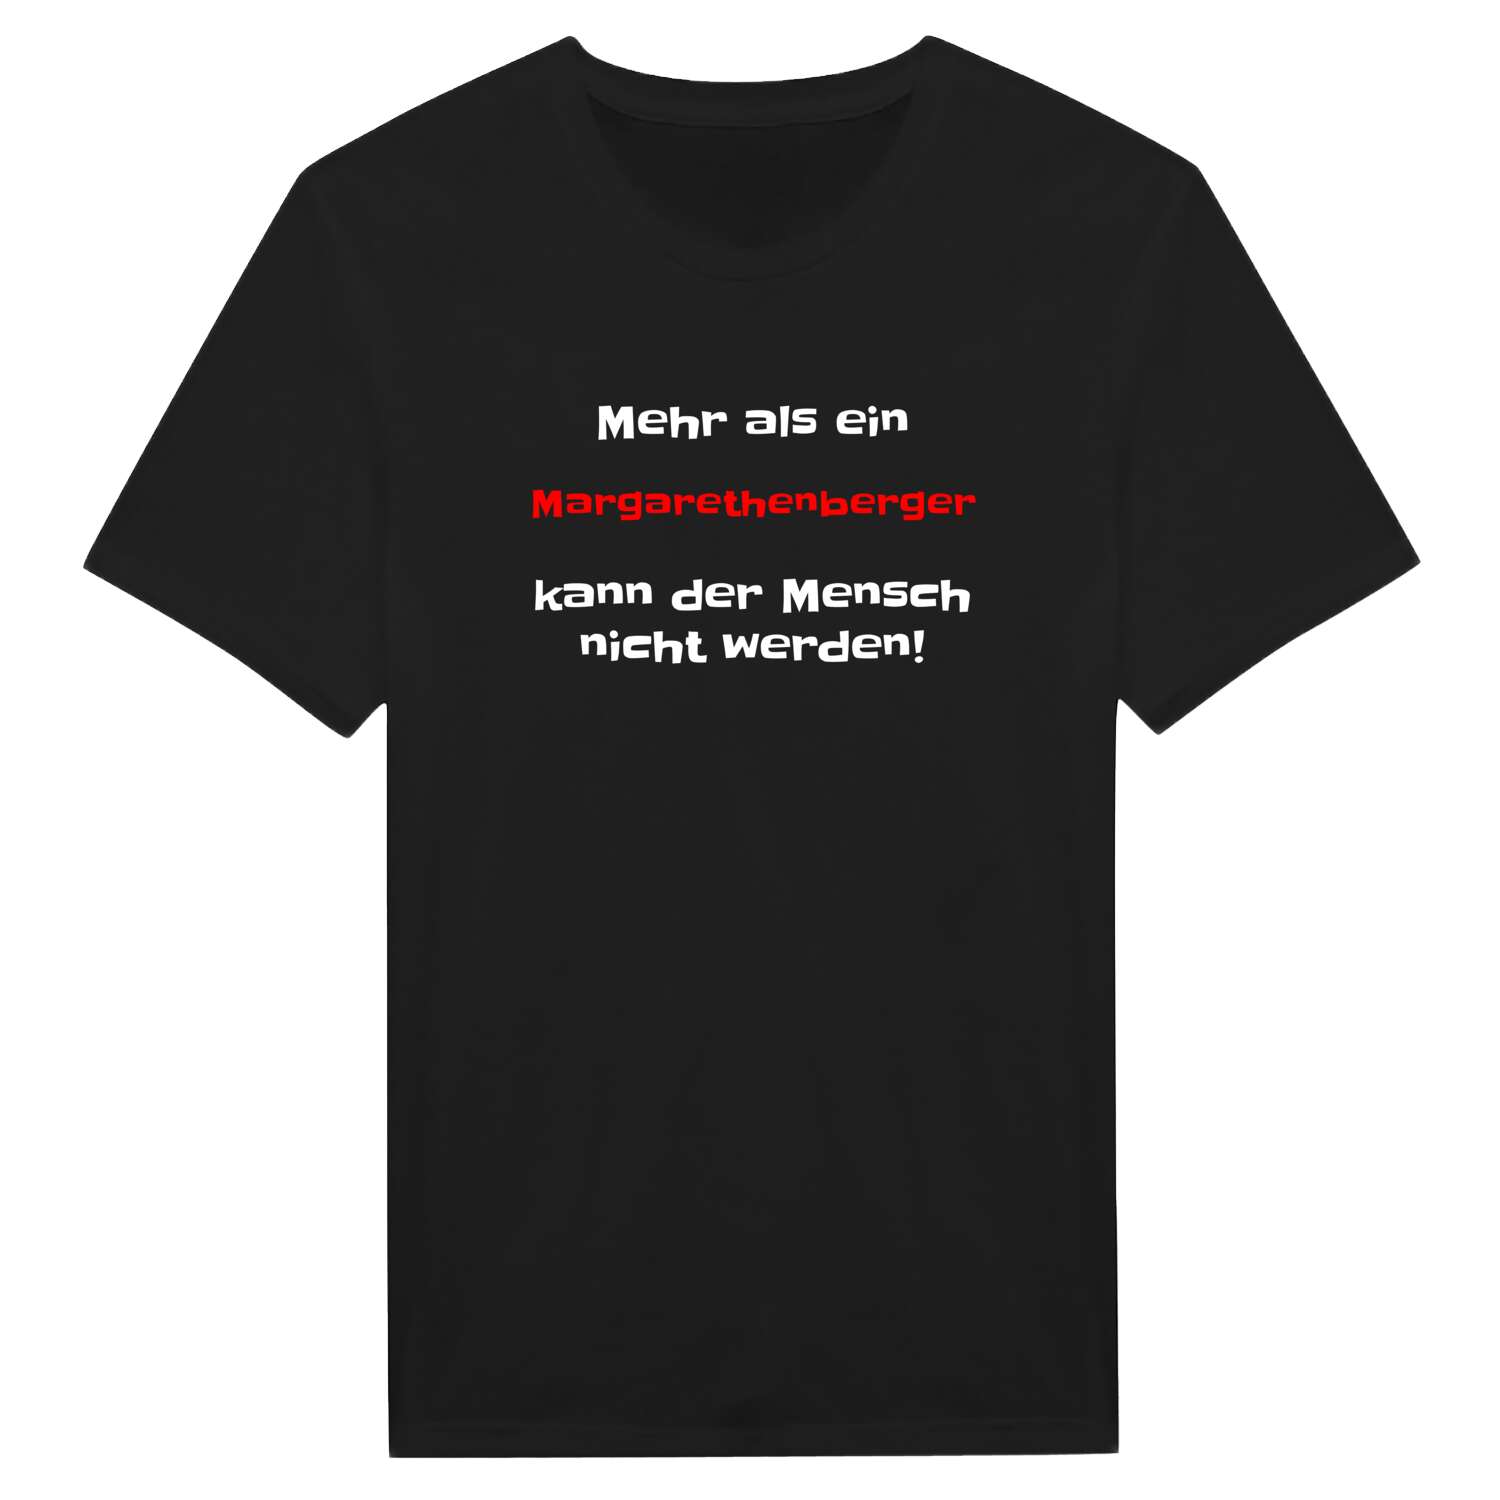 Margarethenberg T-Shirt »Mehr als ein«